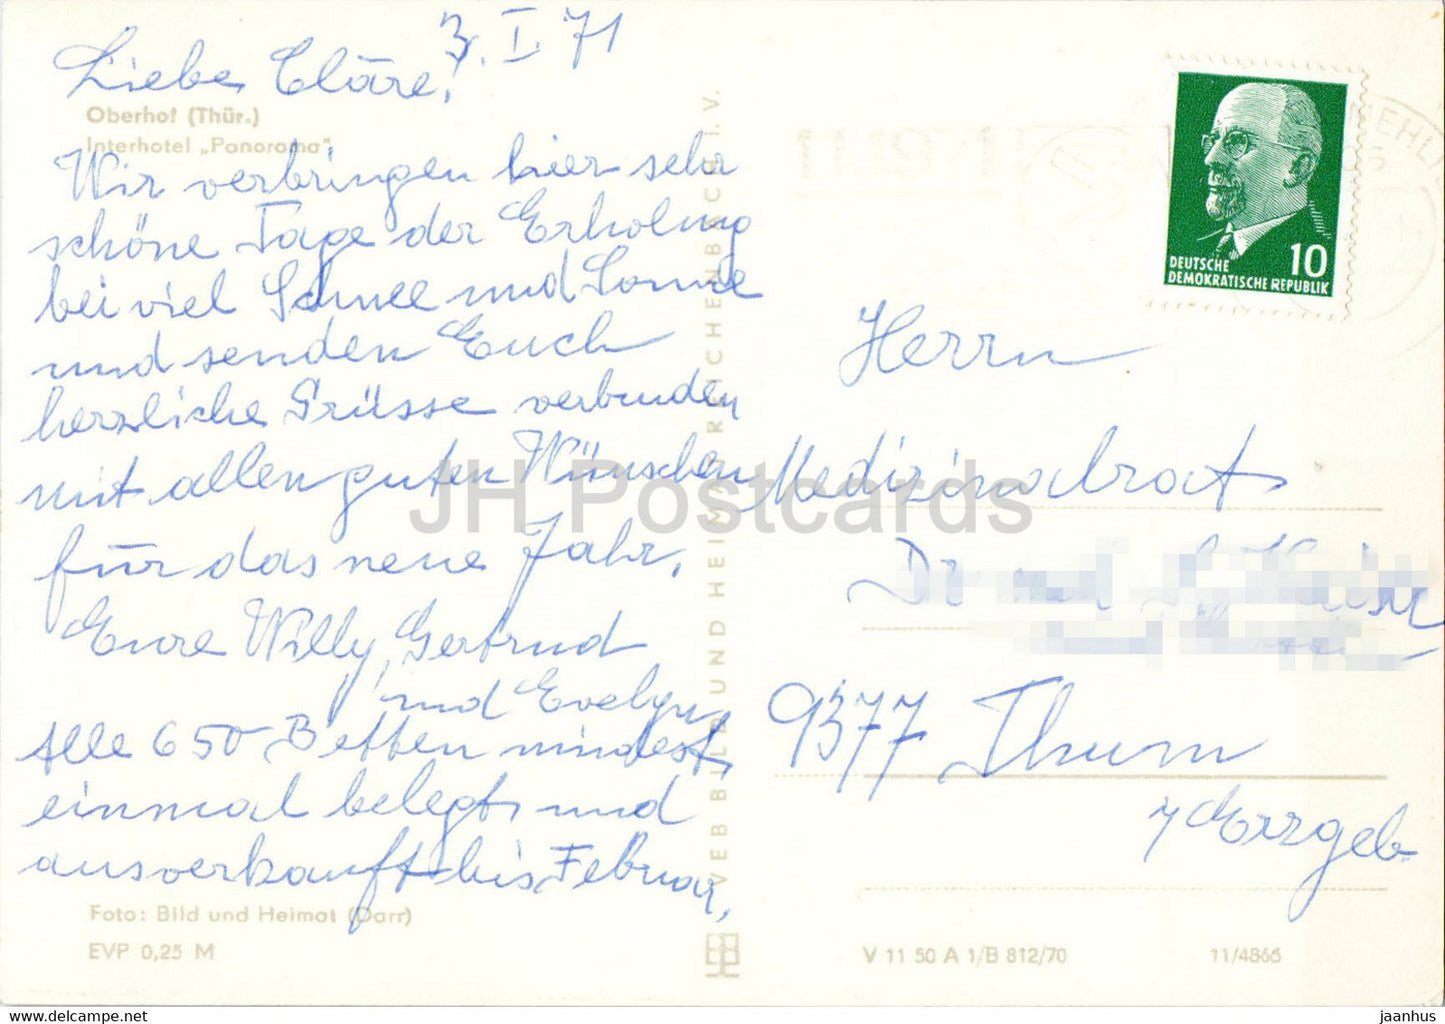 Oberhof - Interhotel Panorama - carte postale ancienne - 1971 - Allemagne DDR - utilisé